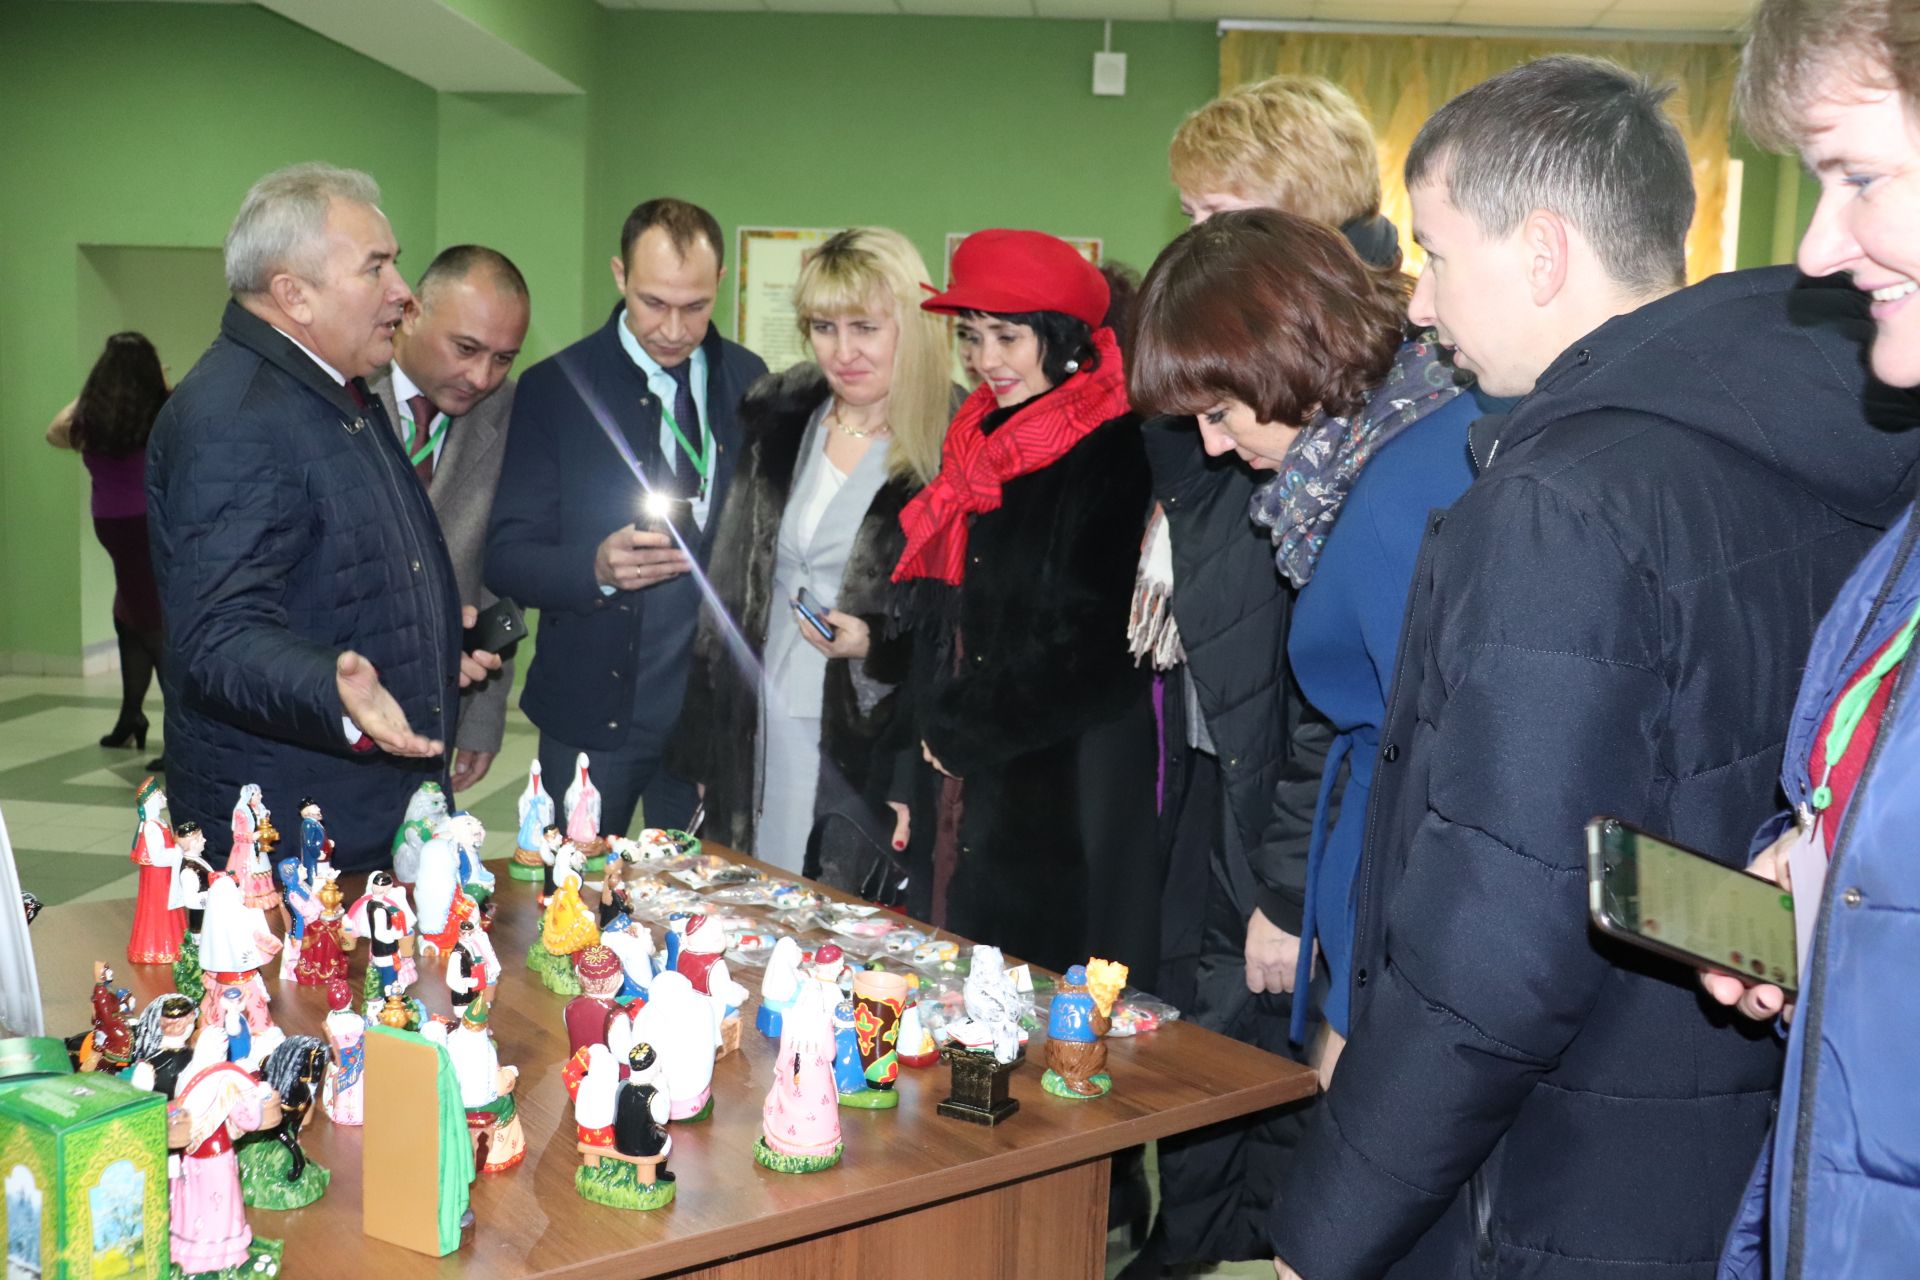 В Азнакаево состоялся семинар руководителей районных управлений образования республики (ФОТО+ВИДЕО)